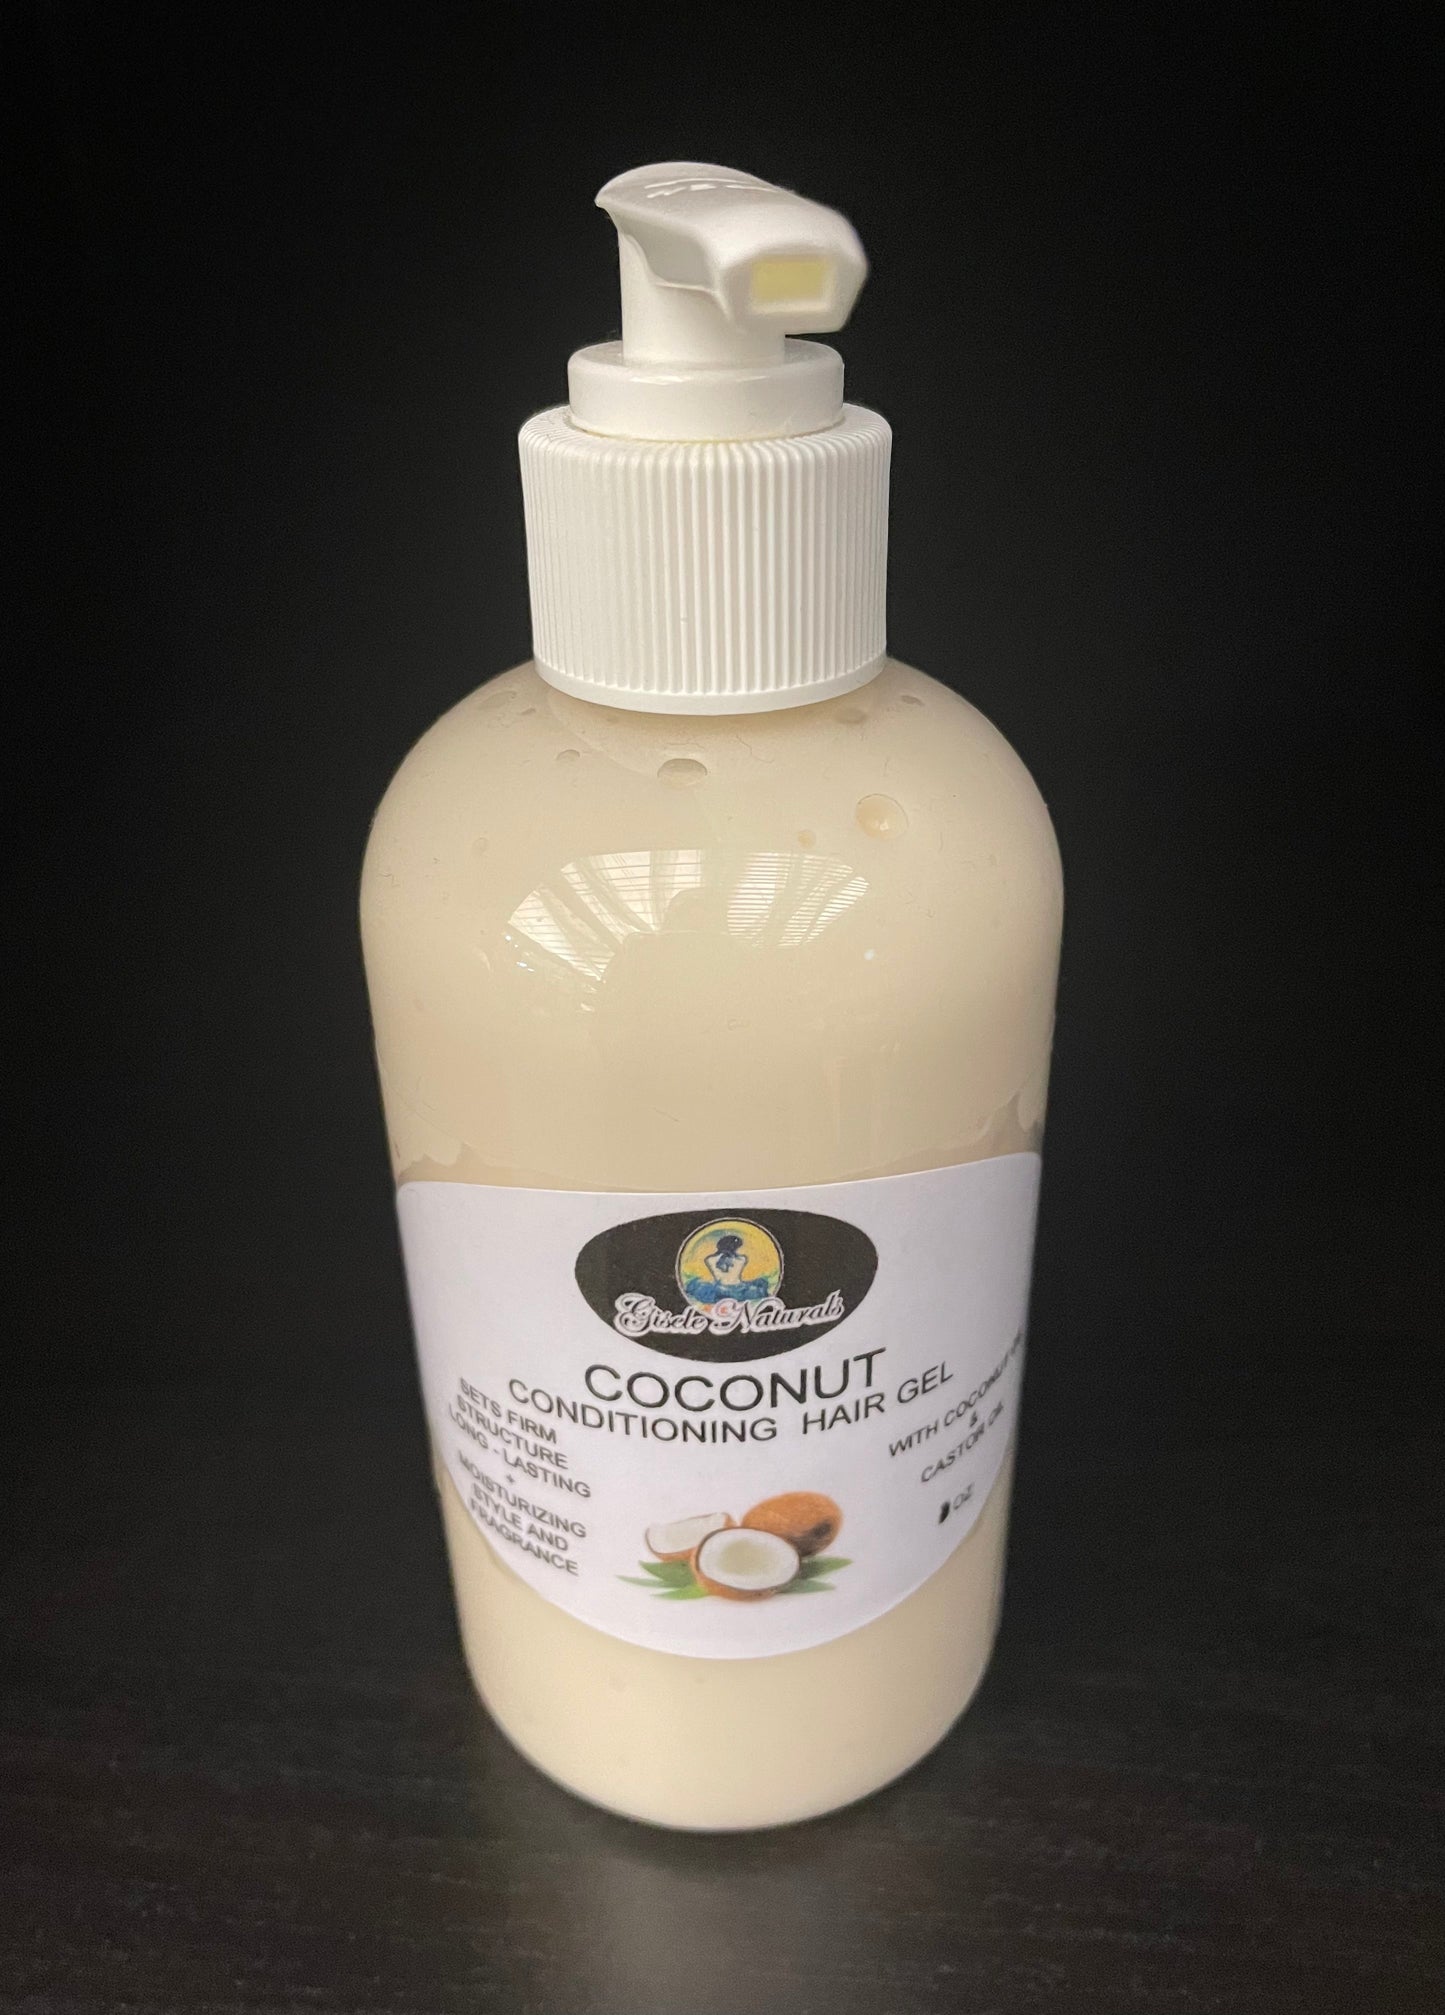 Coconut hair gel